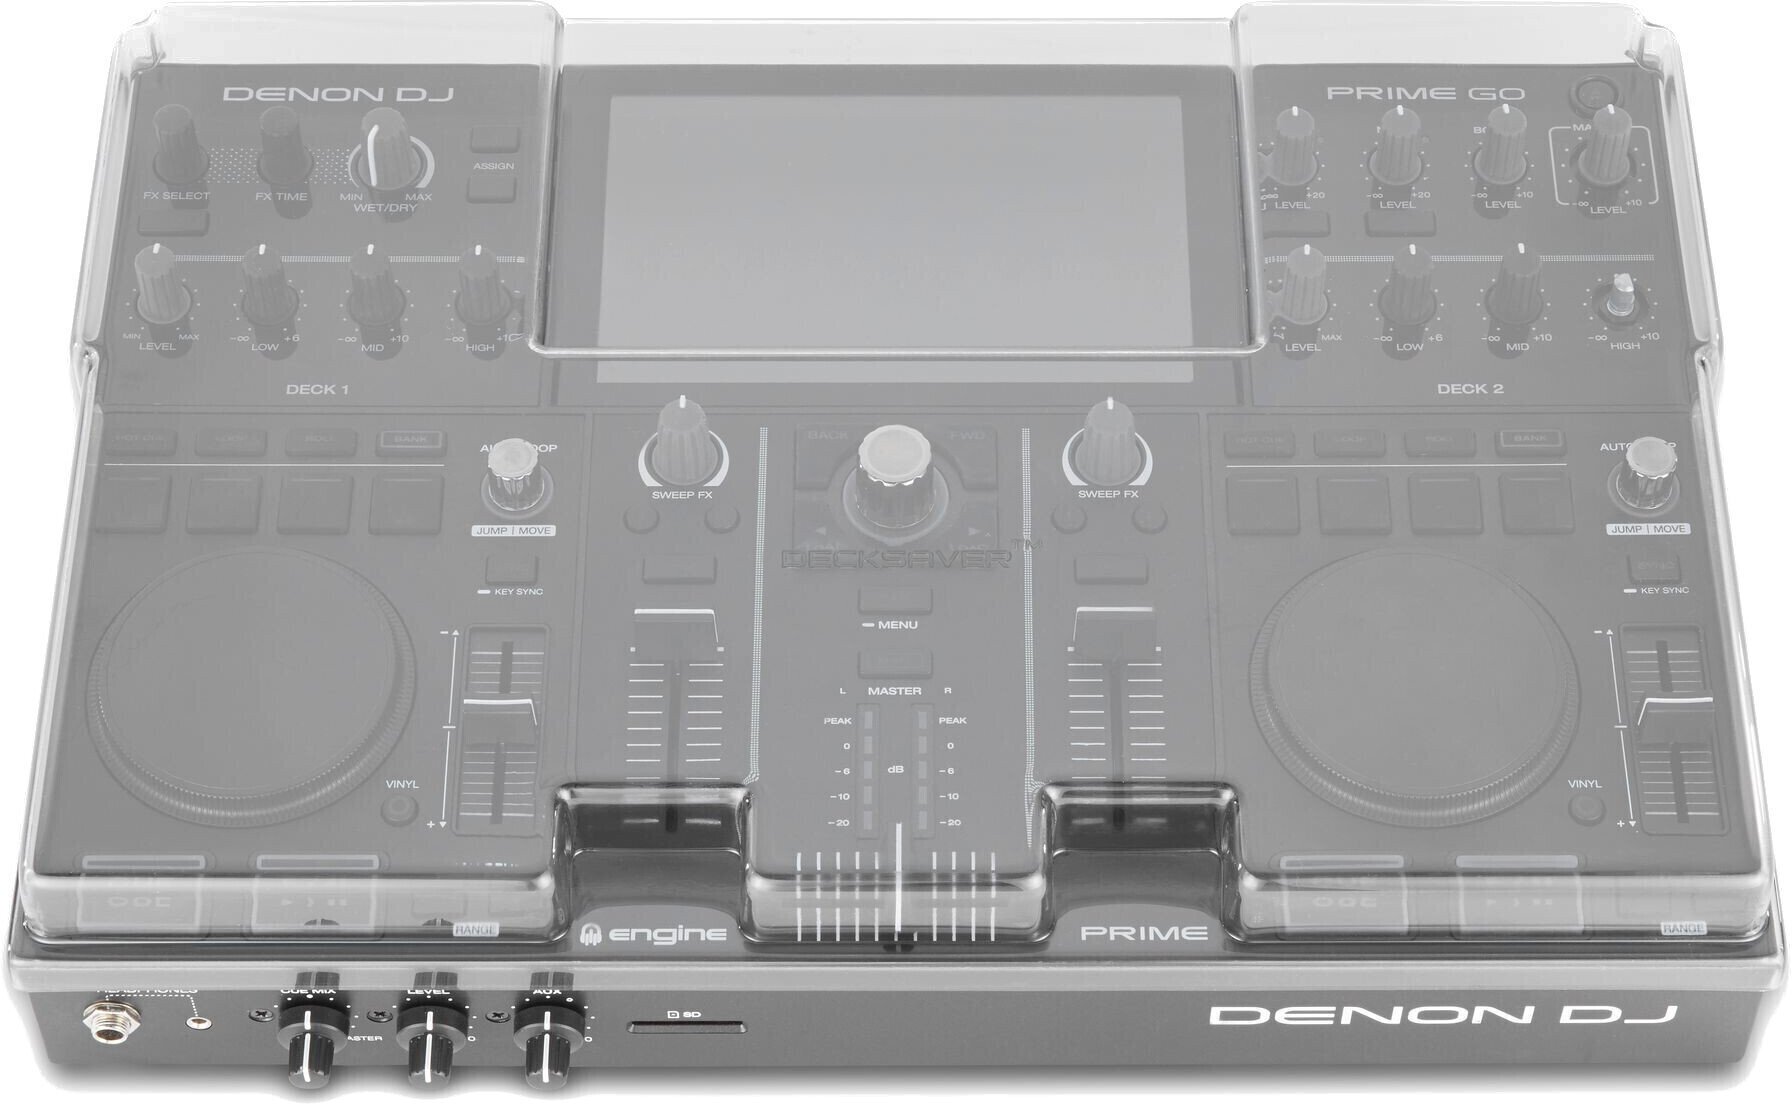 Couvercle de protection pour contrôleurs DJ Decksaver Denon DJ Prime Go